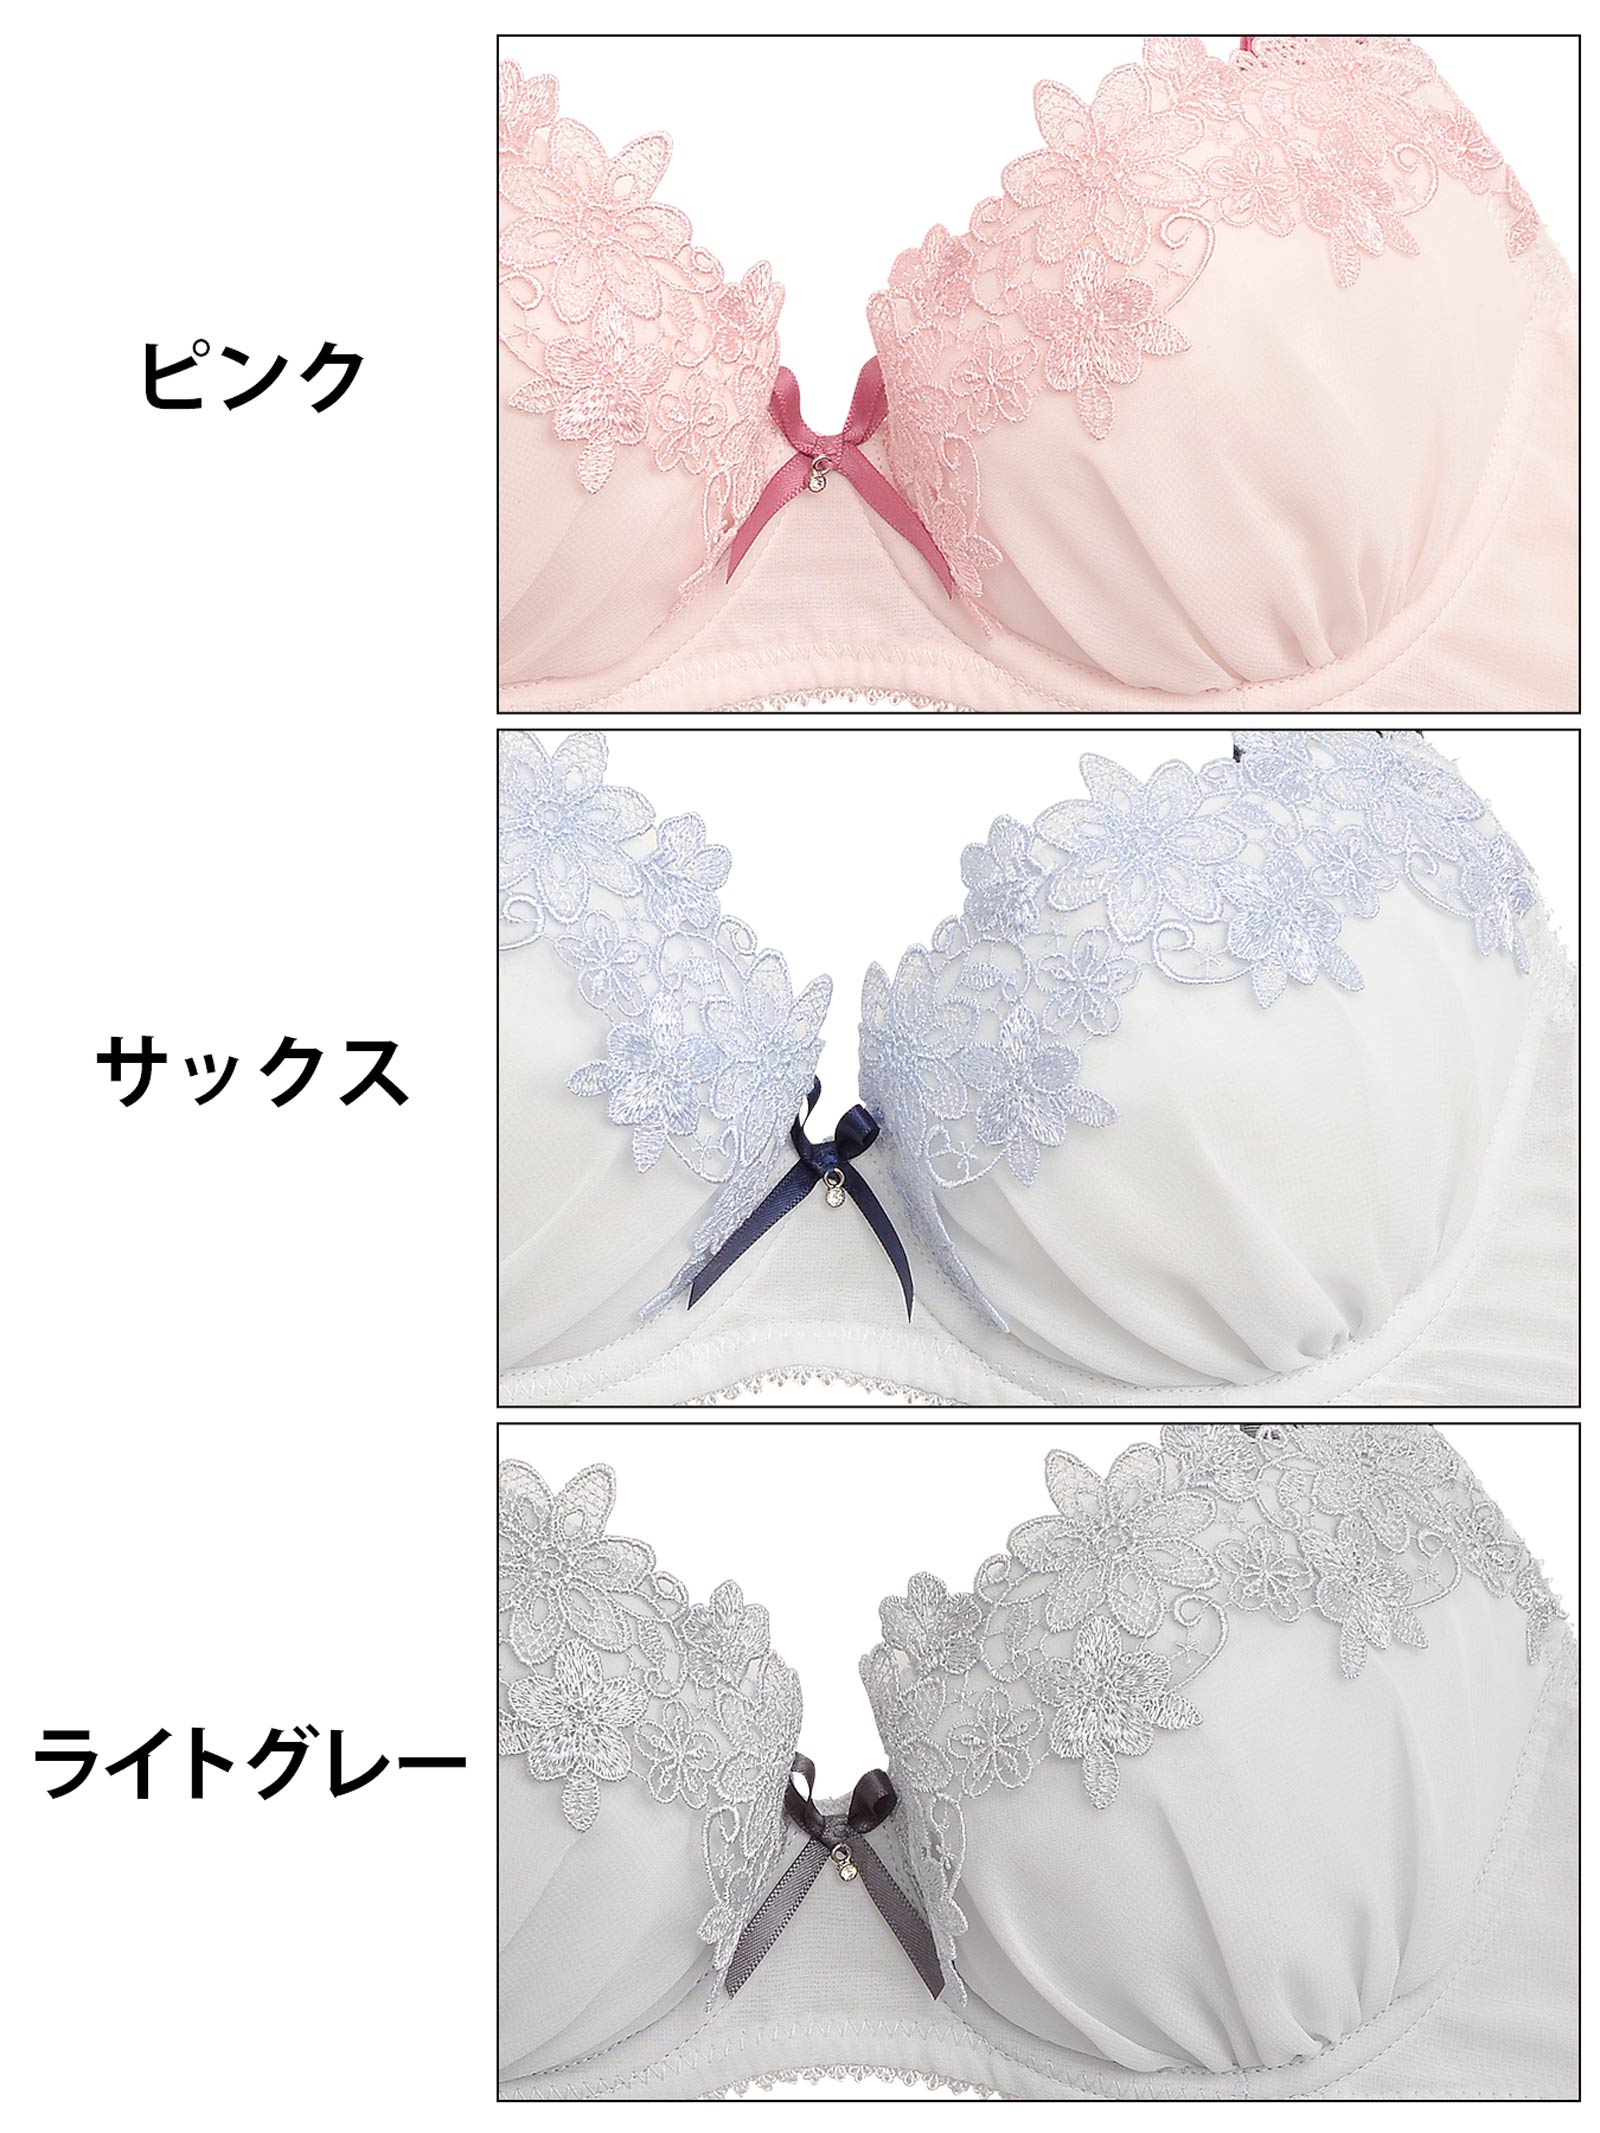 【palissee】フェミニンフローラル刺繍ブラジャー&フルバックショーツ